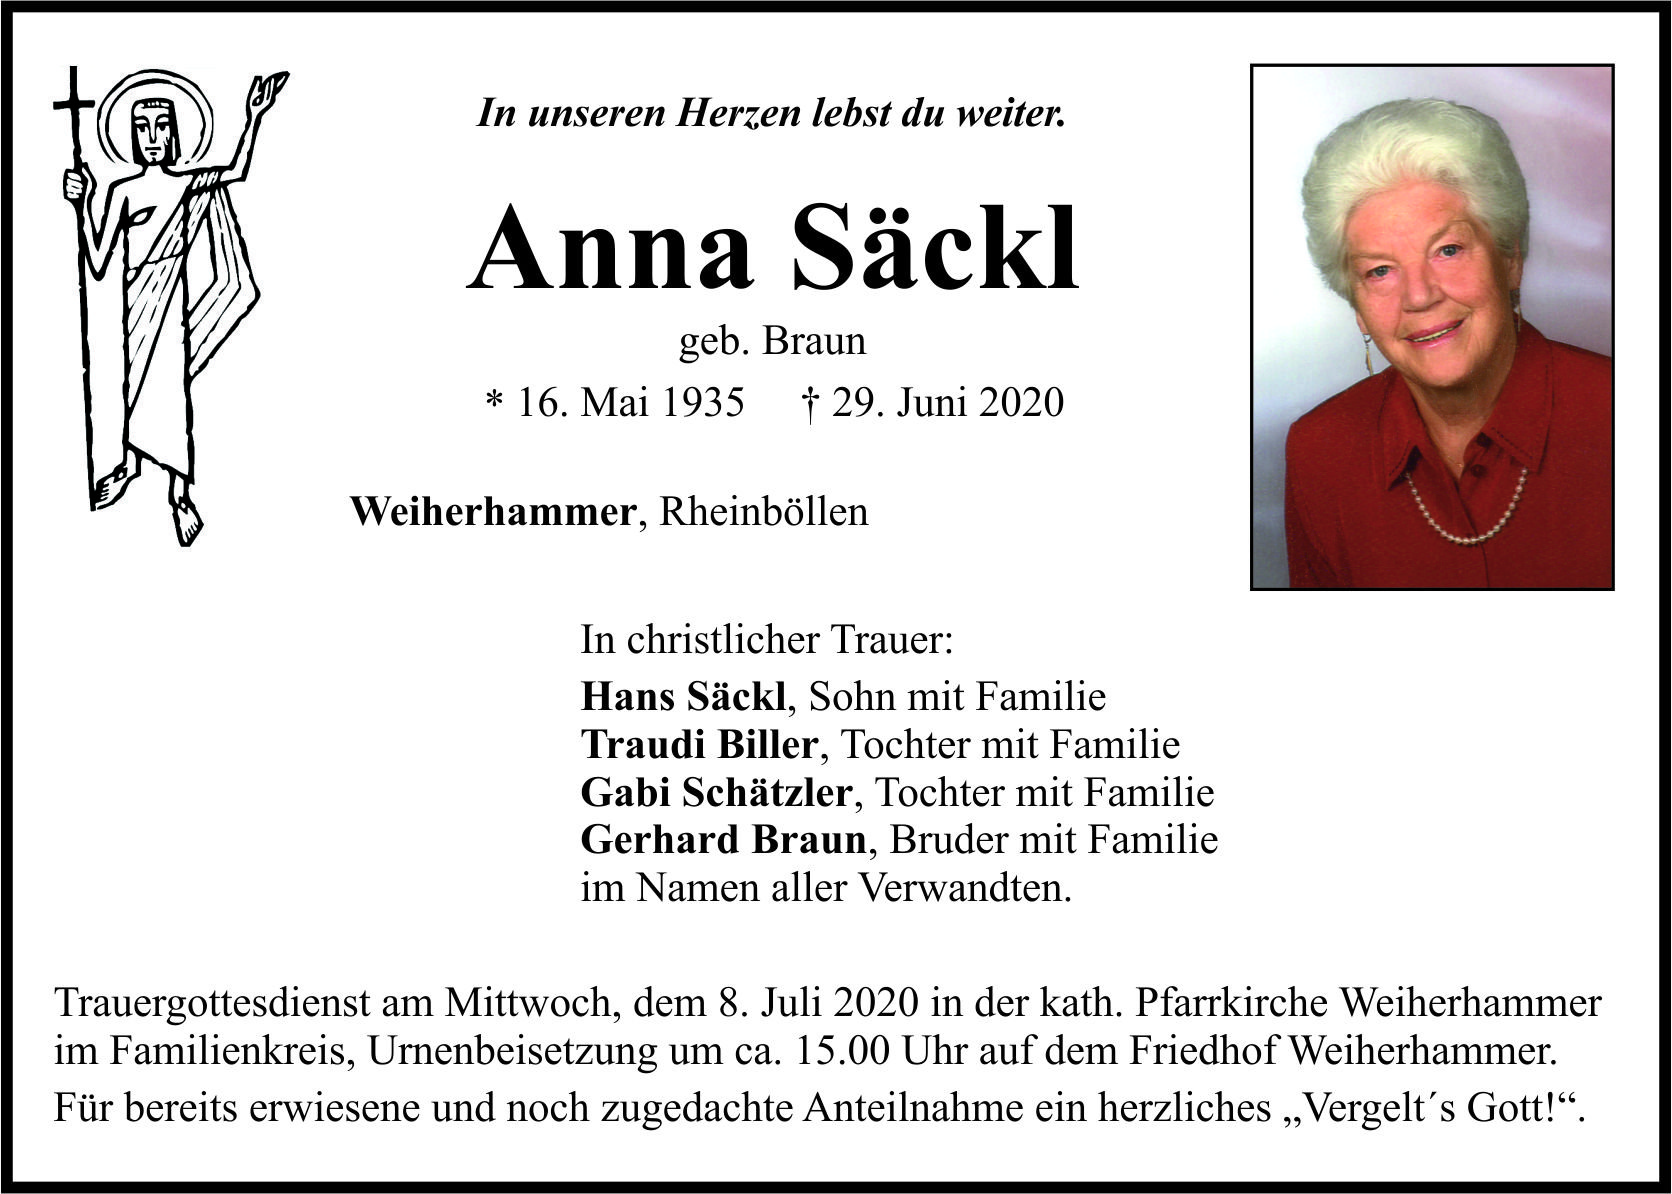 Traueranzeige Anna Säckl, Weiherhammer